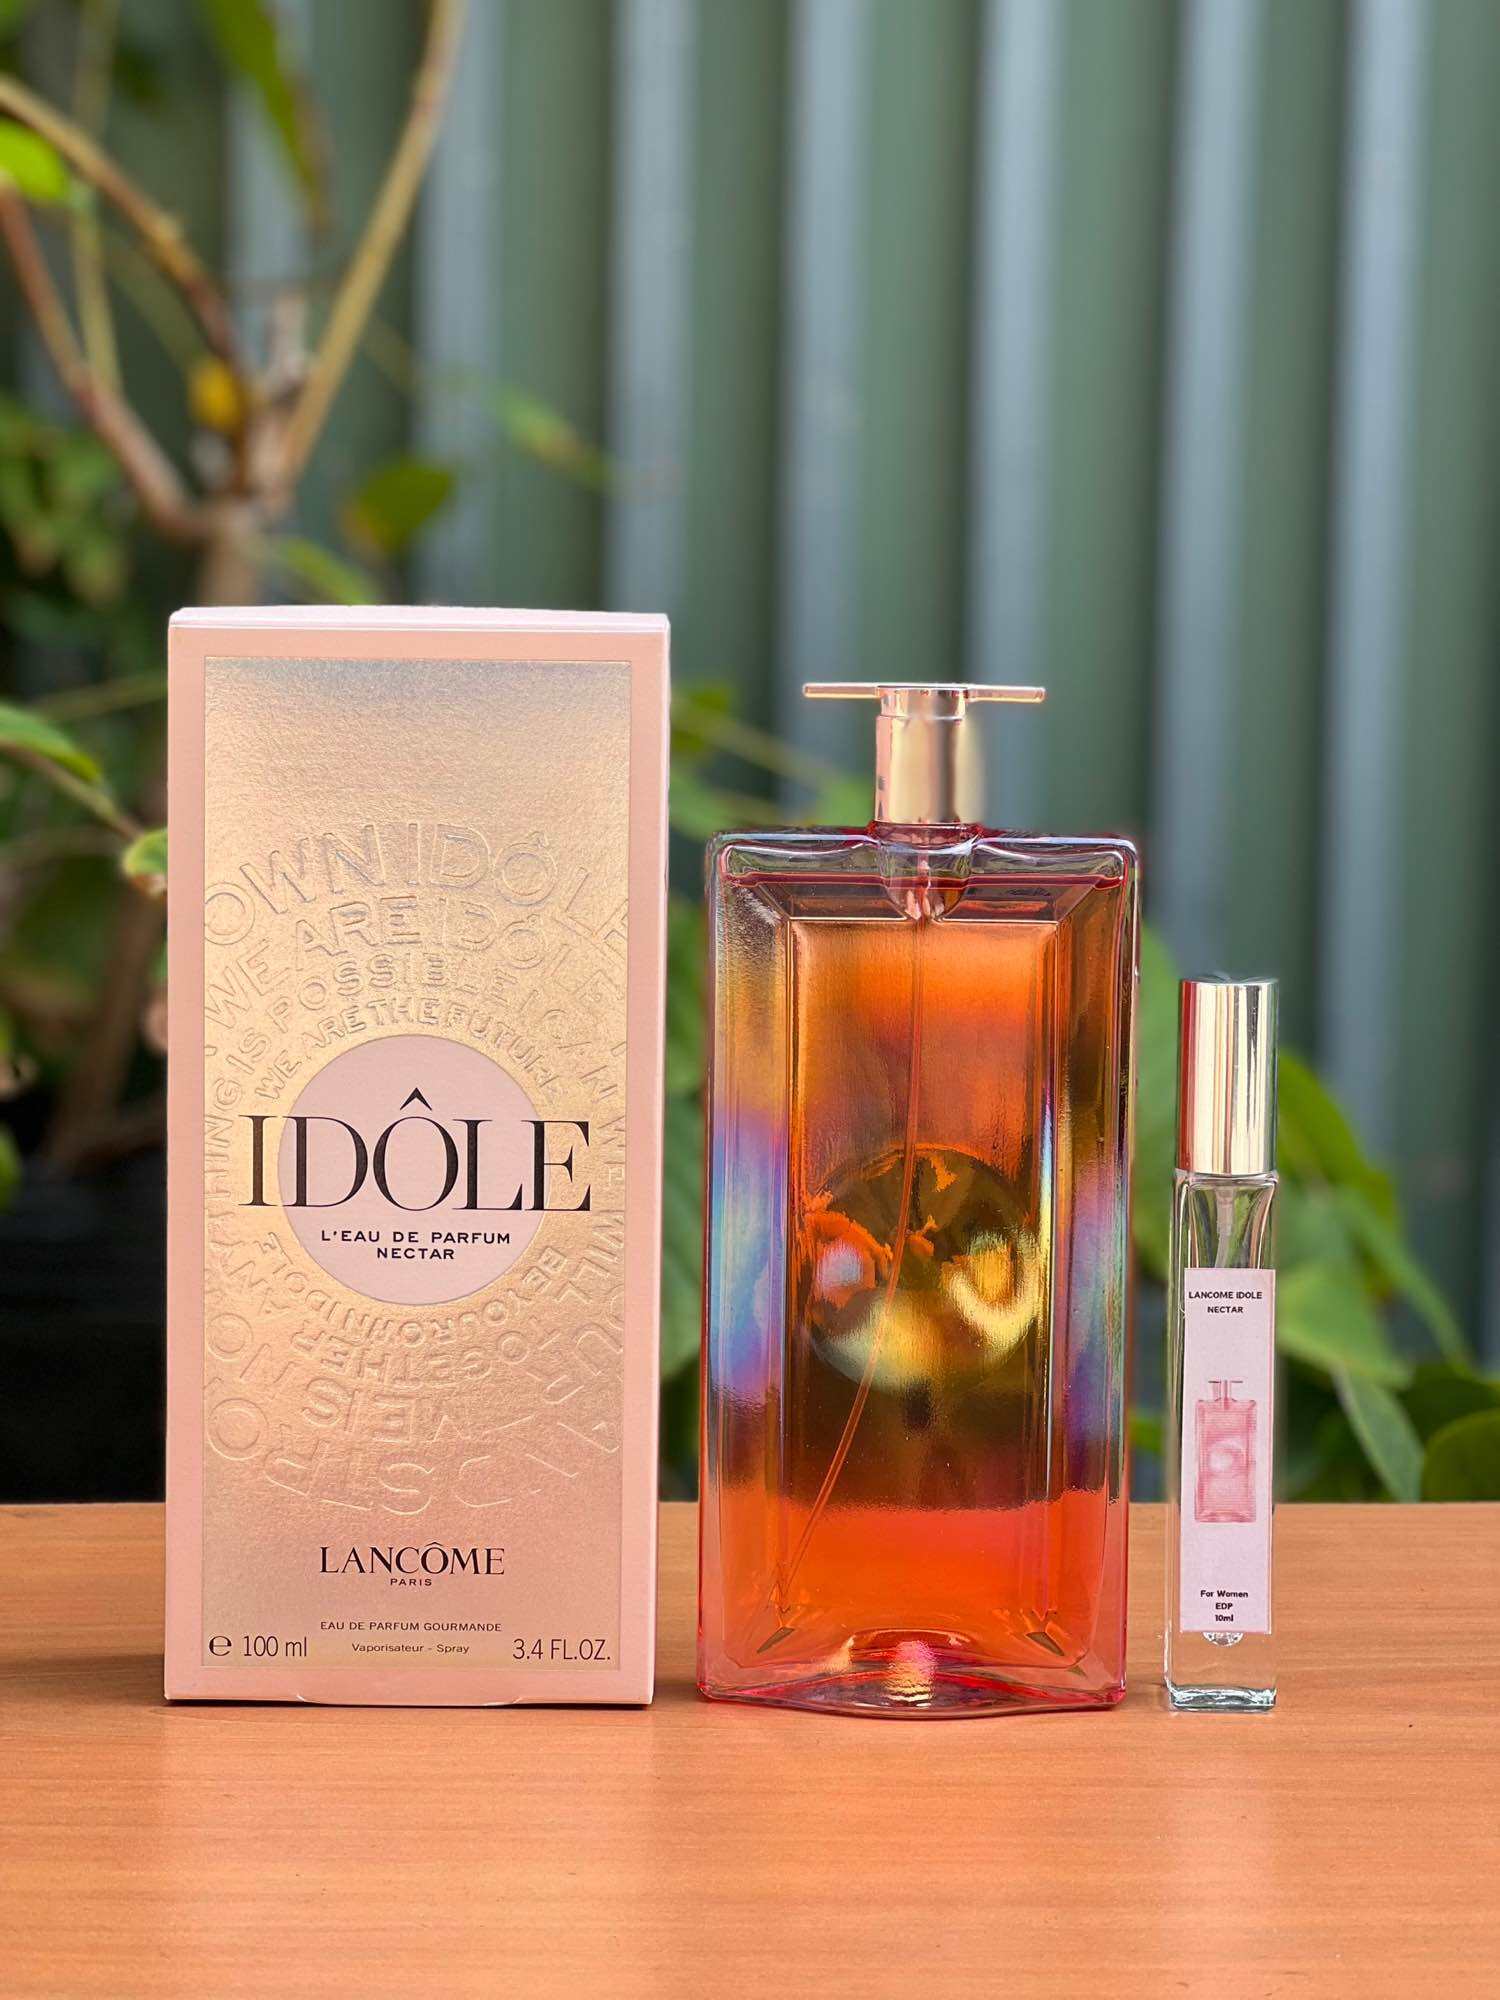 Nước hoa chiết nữ Lancome Idole L'eau De Parfum Nectar EDP Gourmande chiết 10ml